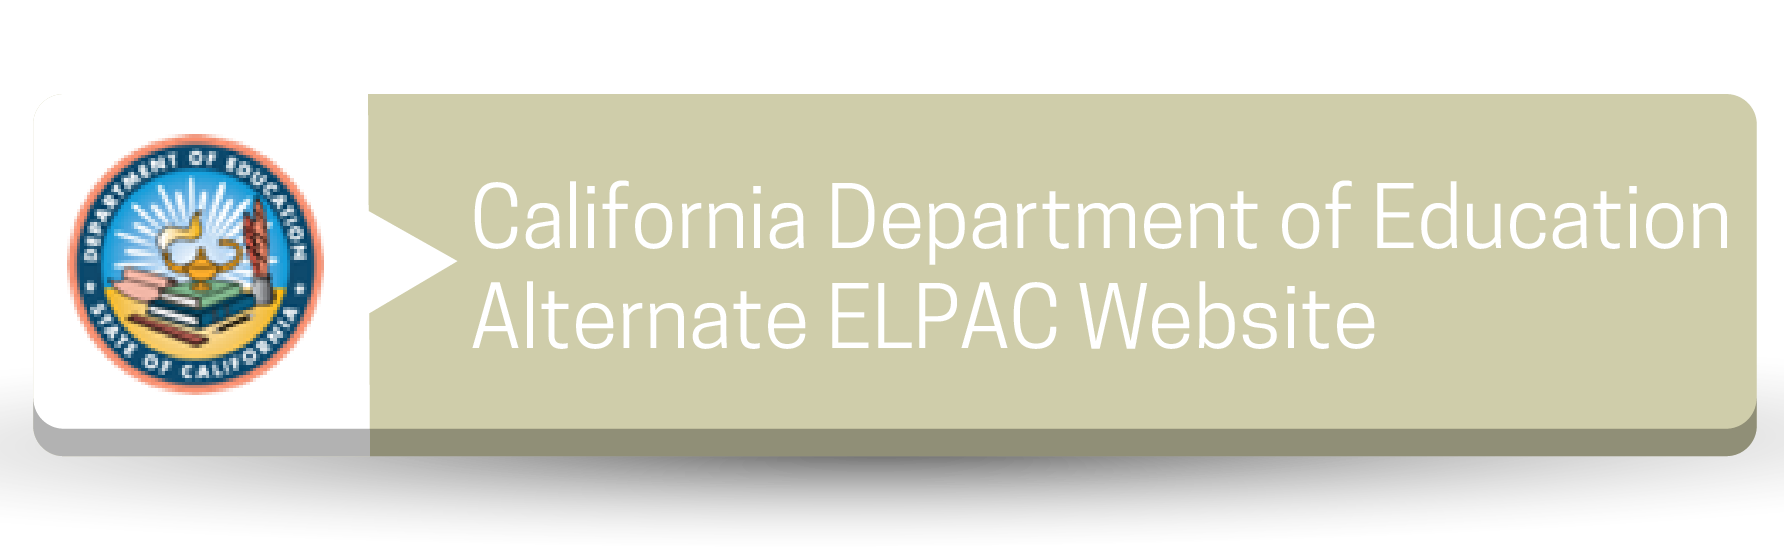 Botón del sitio web alternativo de ELPAC del Departamento de Educación de California